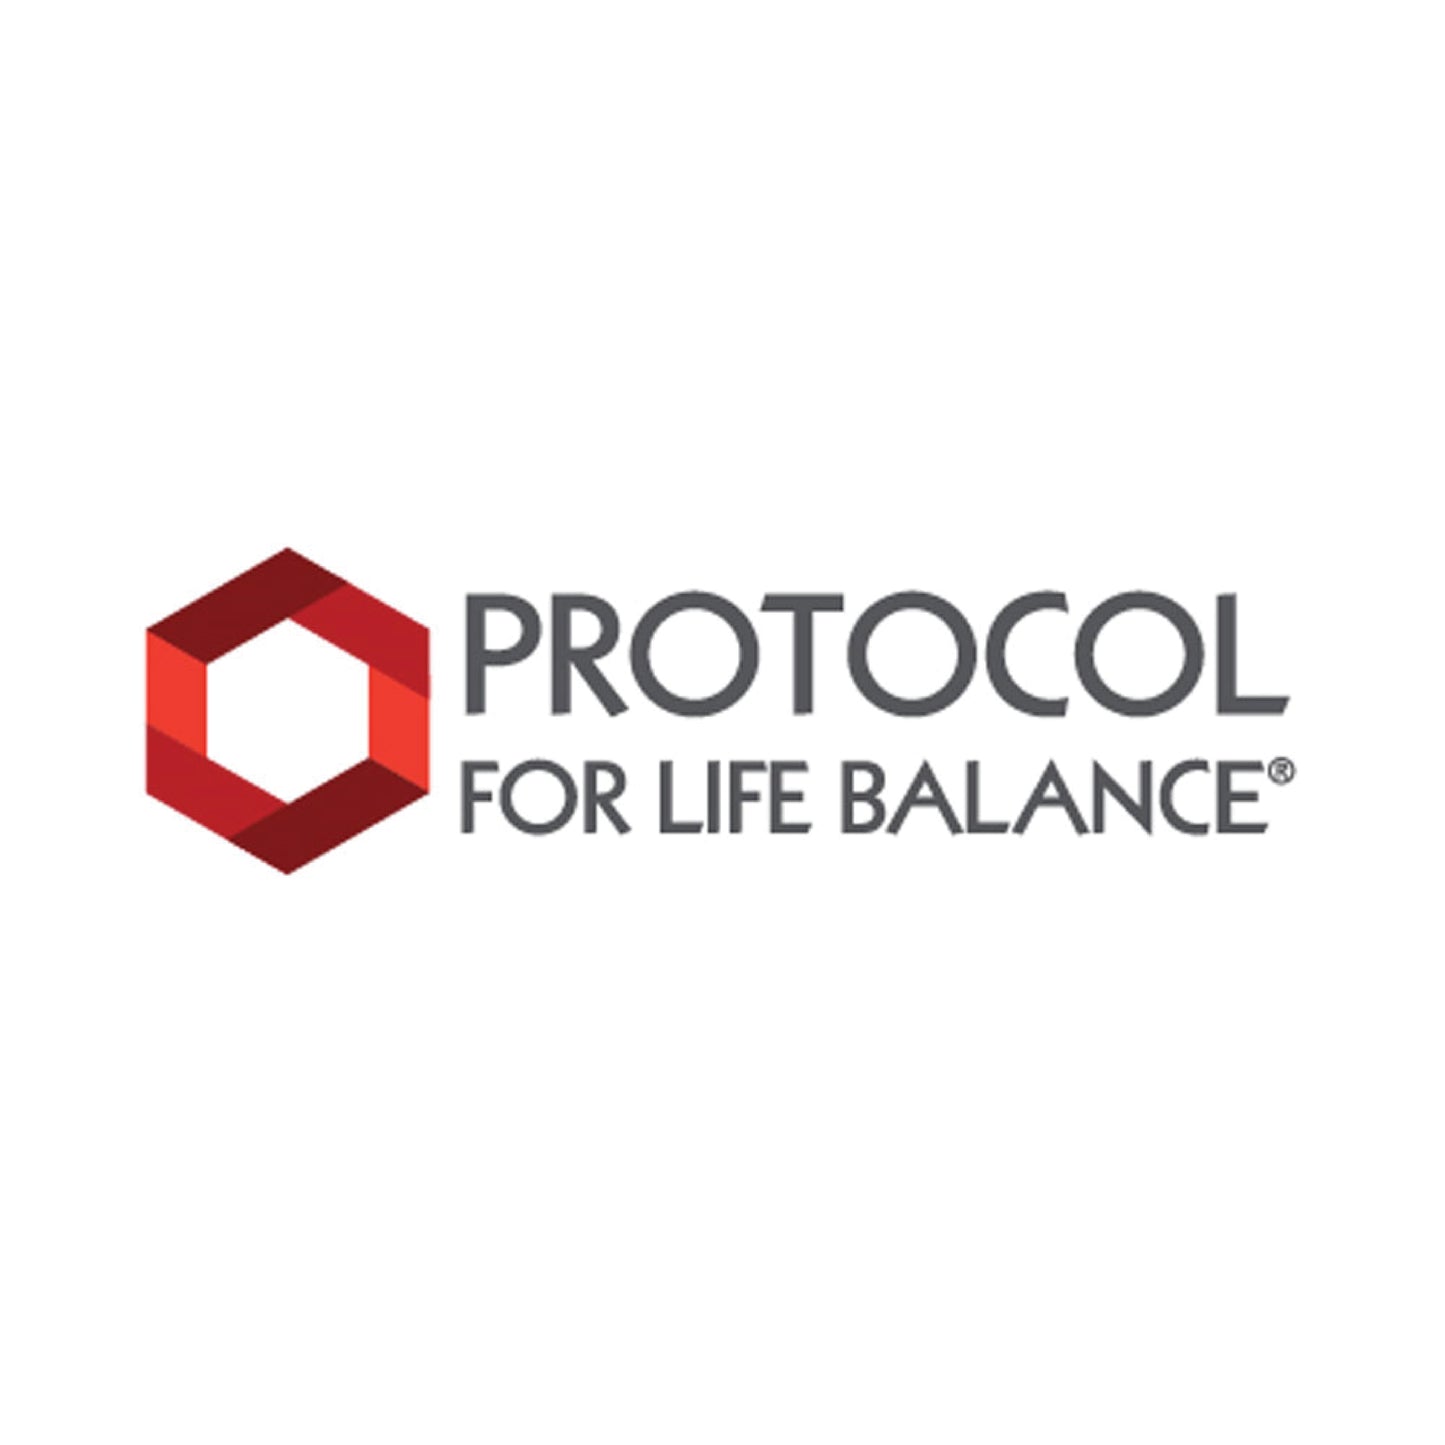 Protocol for Life Balance, Grape Seed OPC 250 mg, 90 Veg Capsules